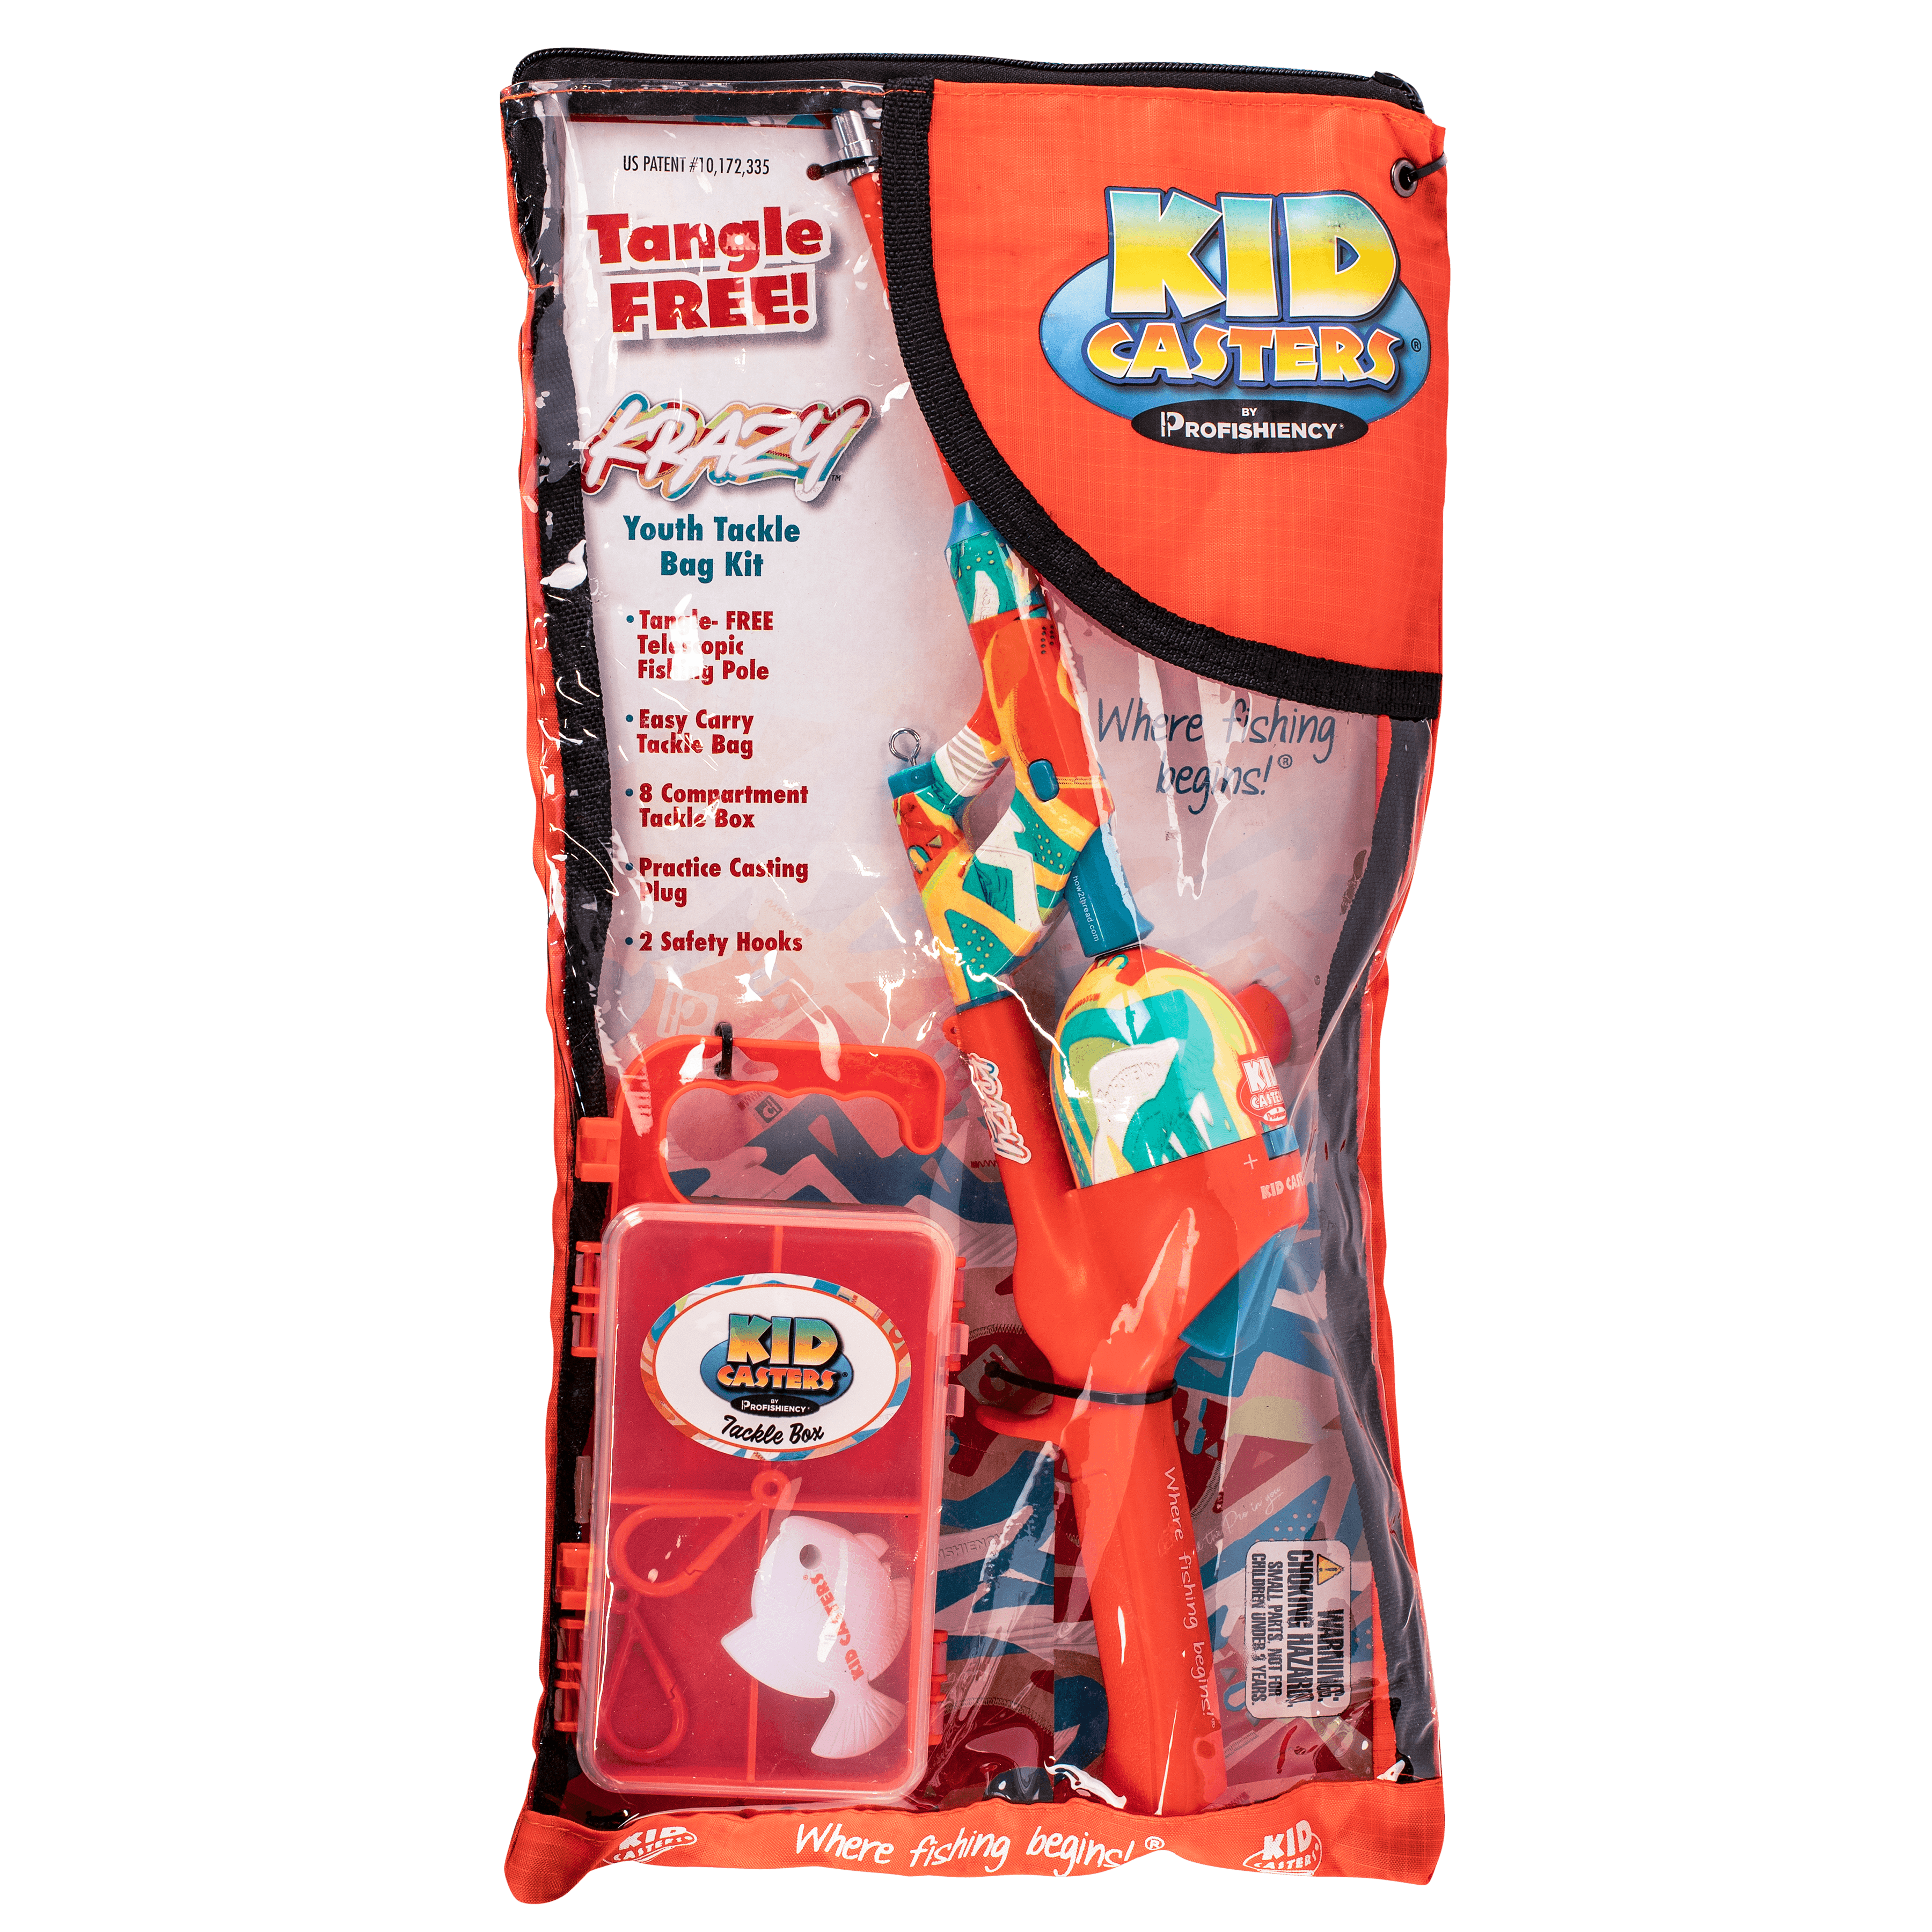 Kid Casters Krazy Tackle Bag Kit